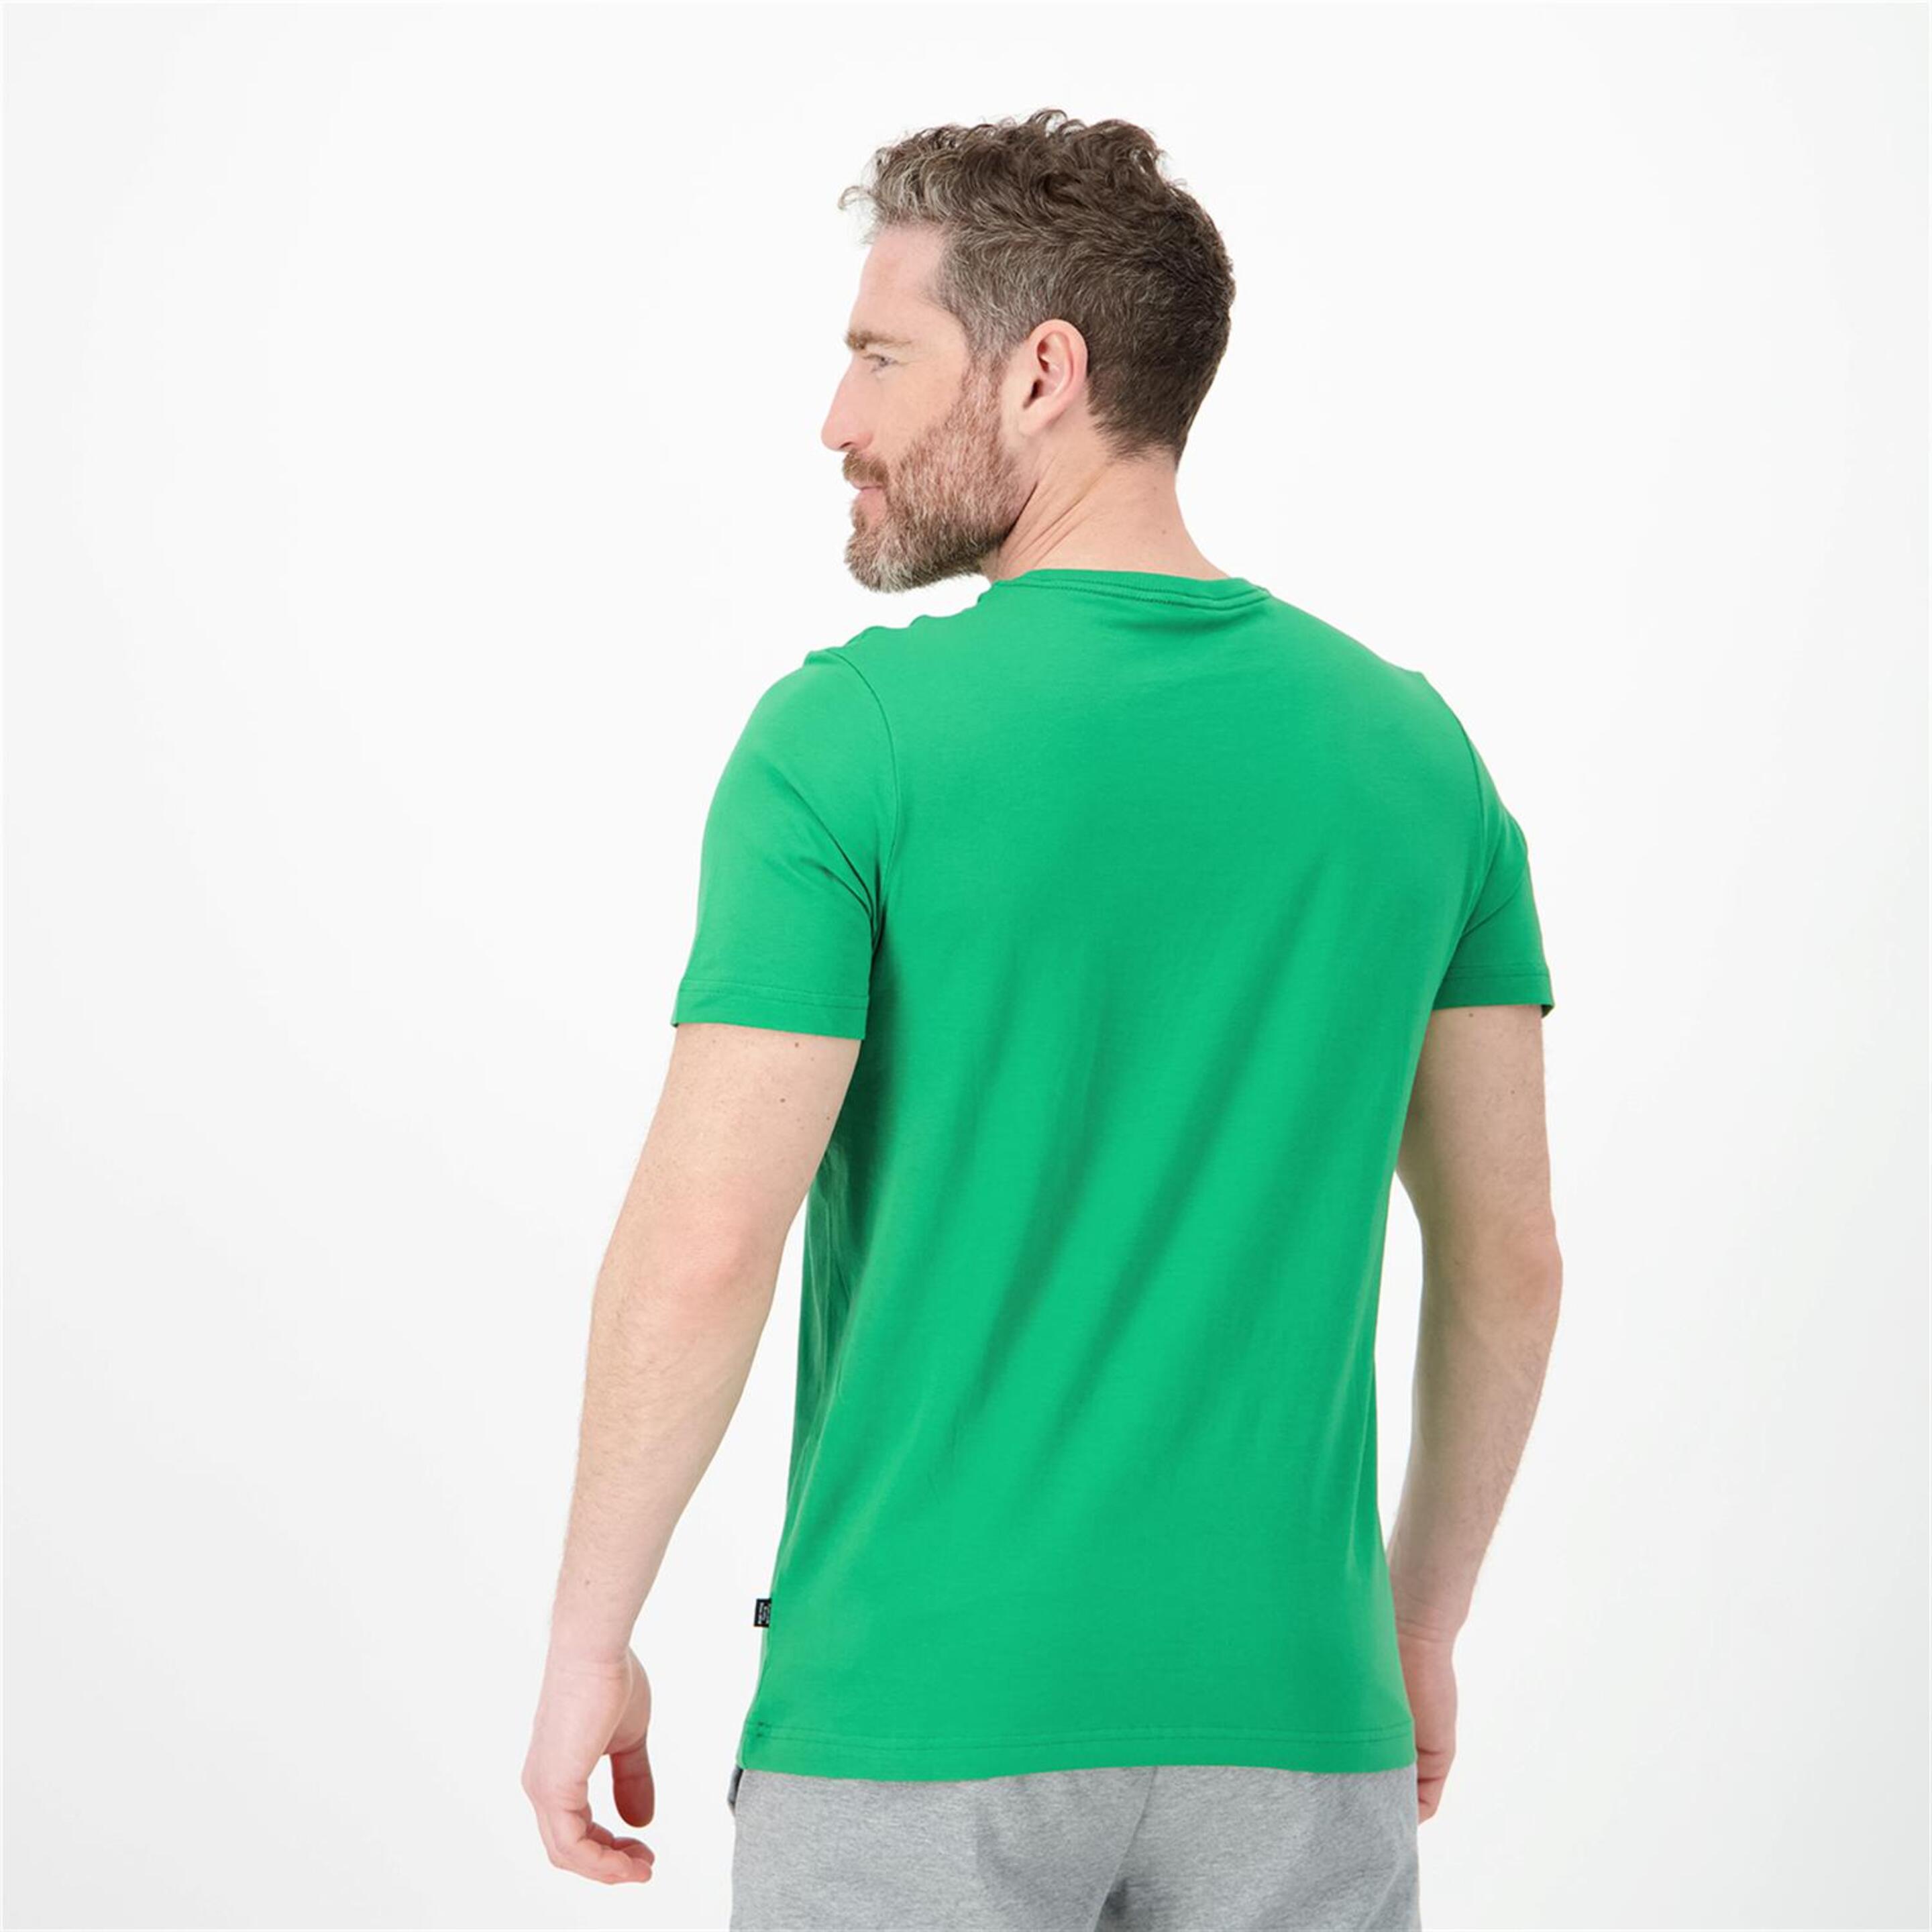 Puma Big Logo - Verde - Camiseta Hombre